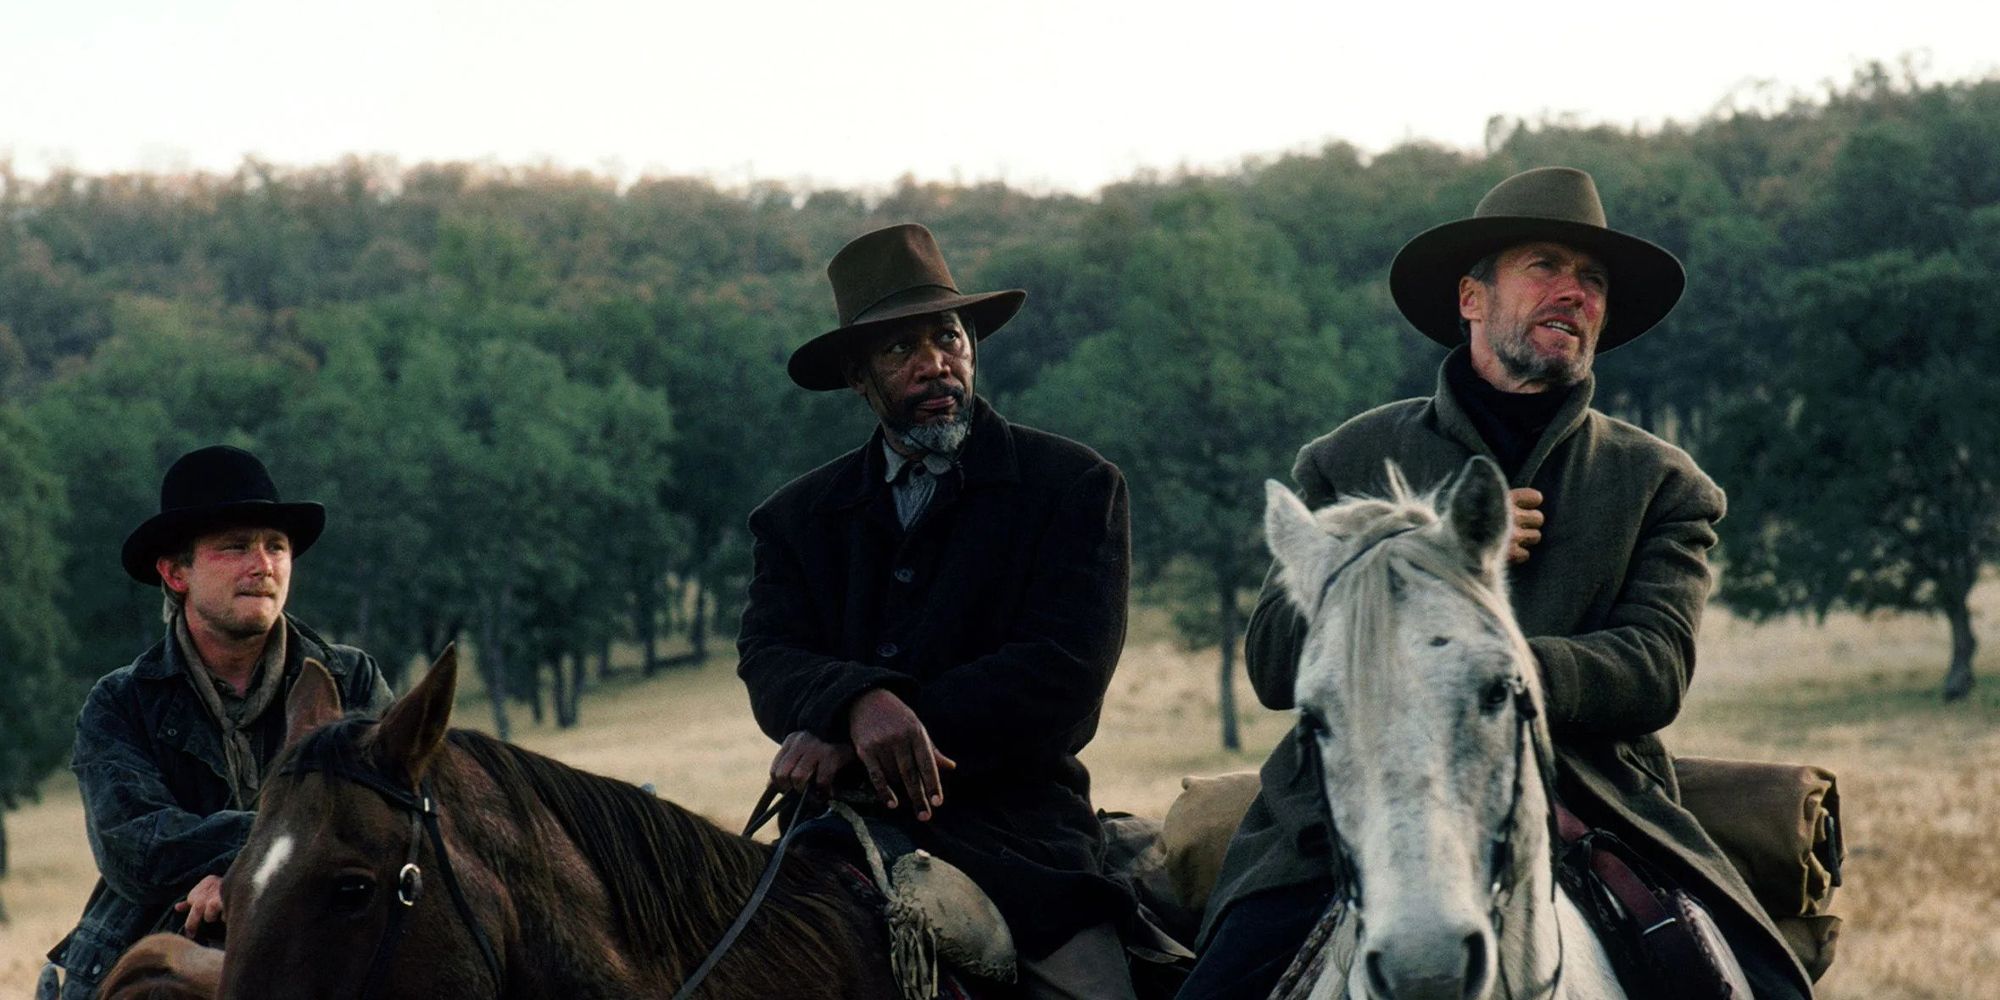 Unforgiven Morgan Freeman and Clint Eastwood on horses